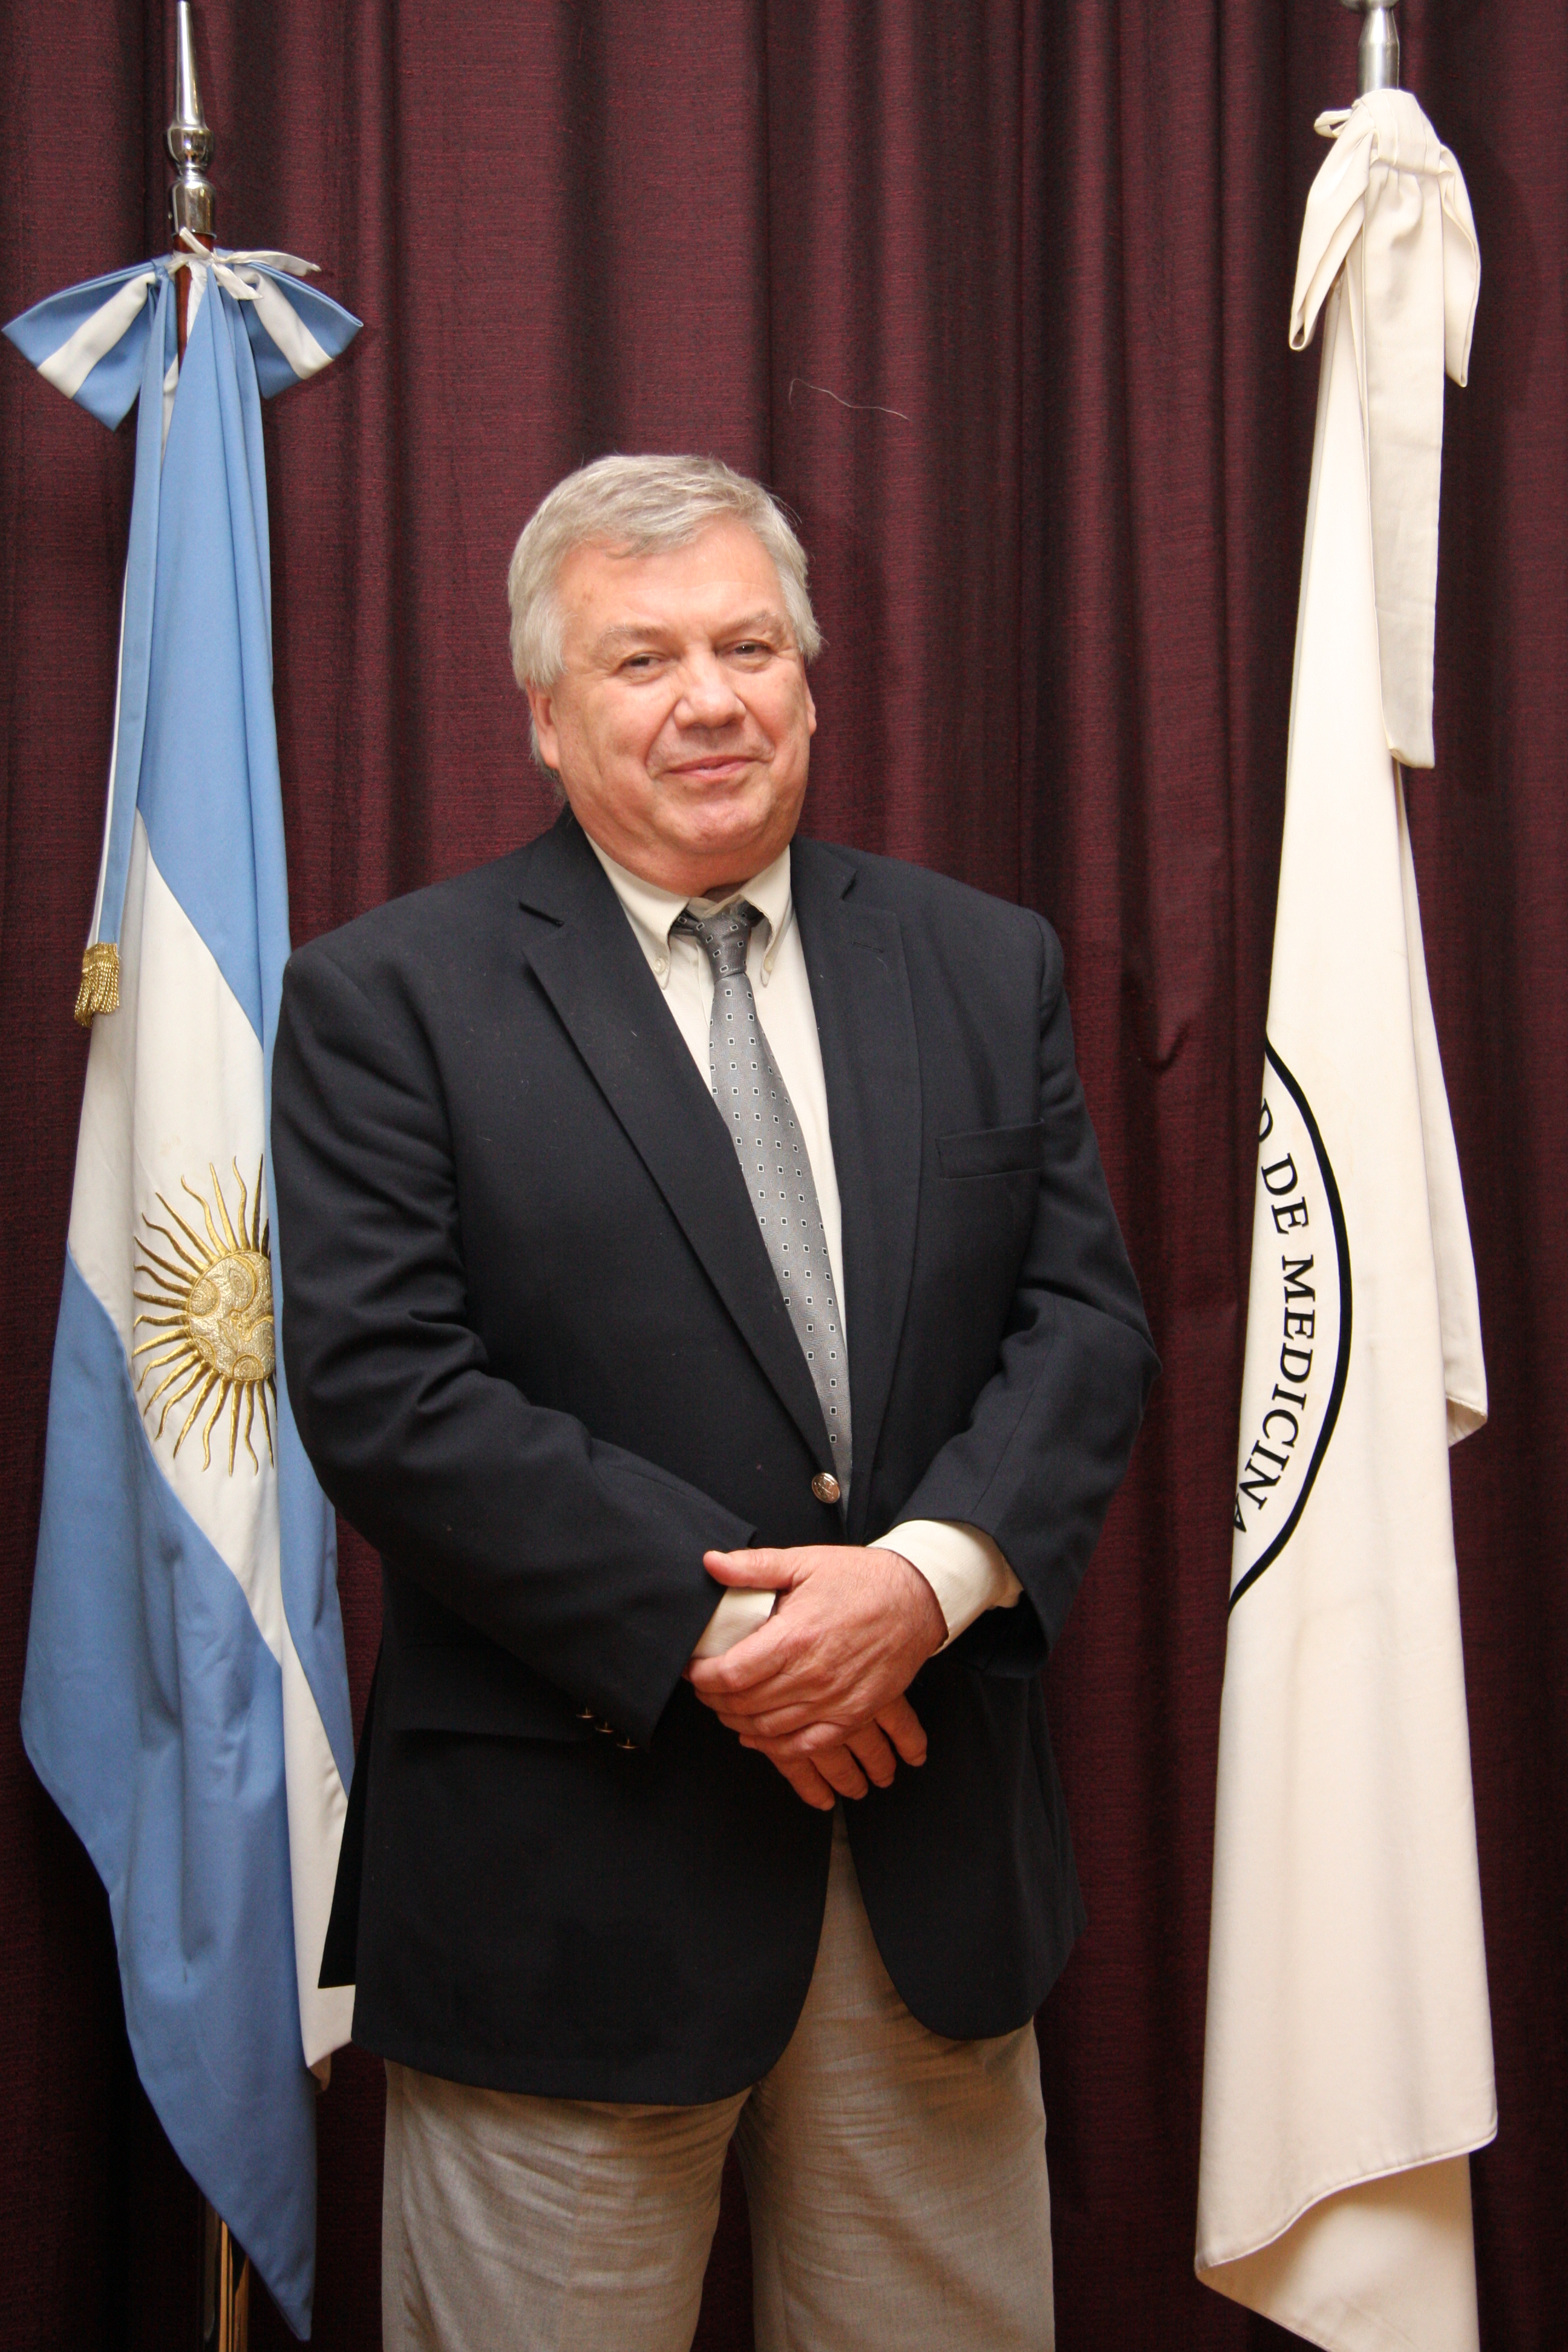 Dr. Ricardo Gelpi